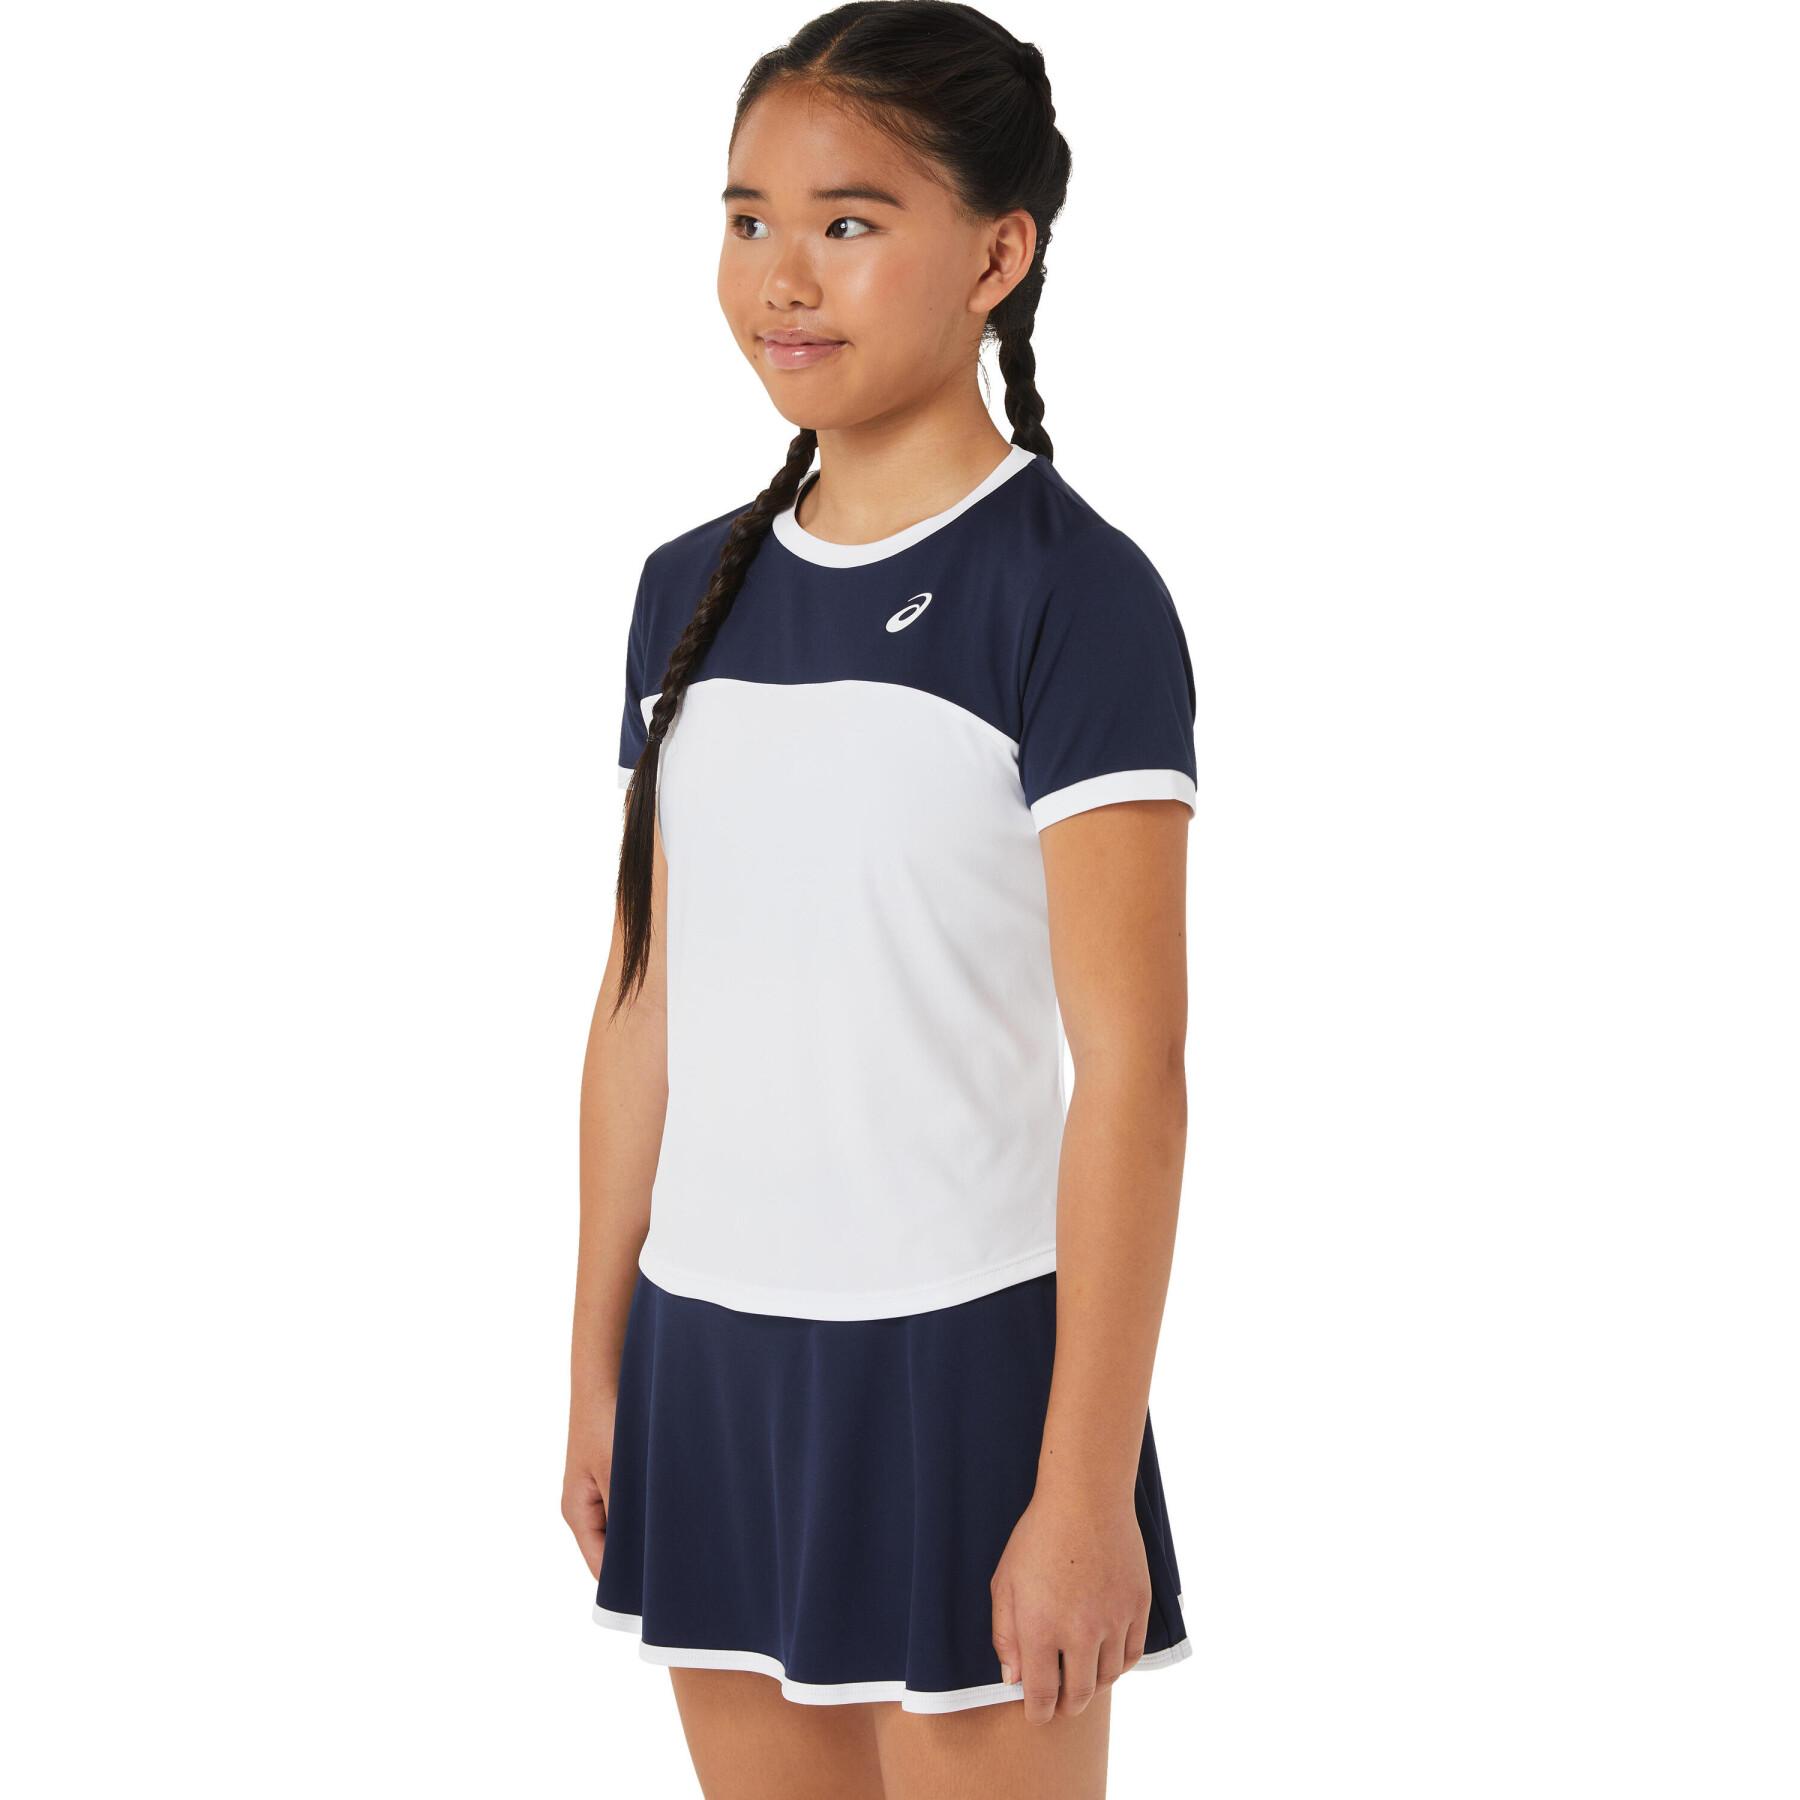 Meisjes tennisshirt Asics